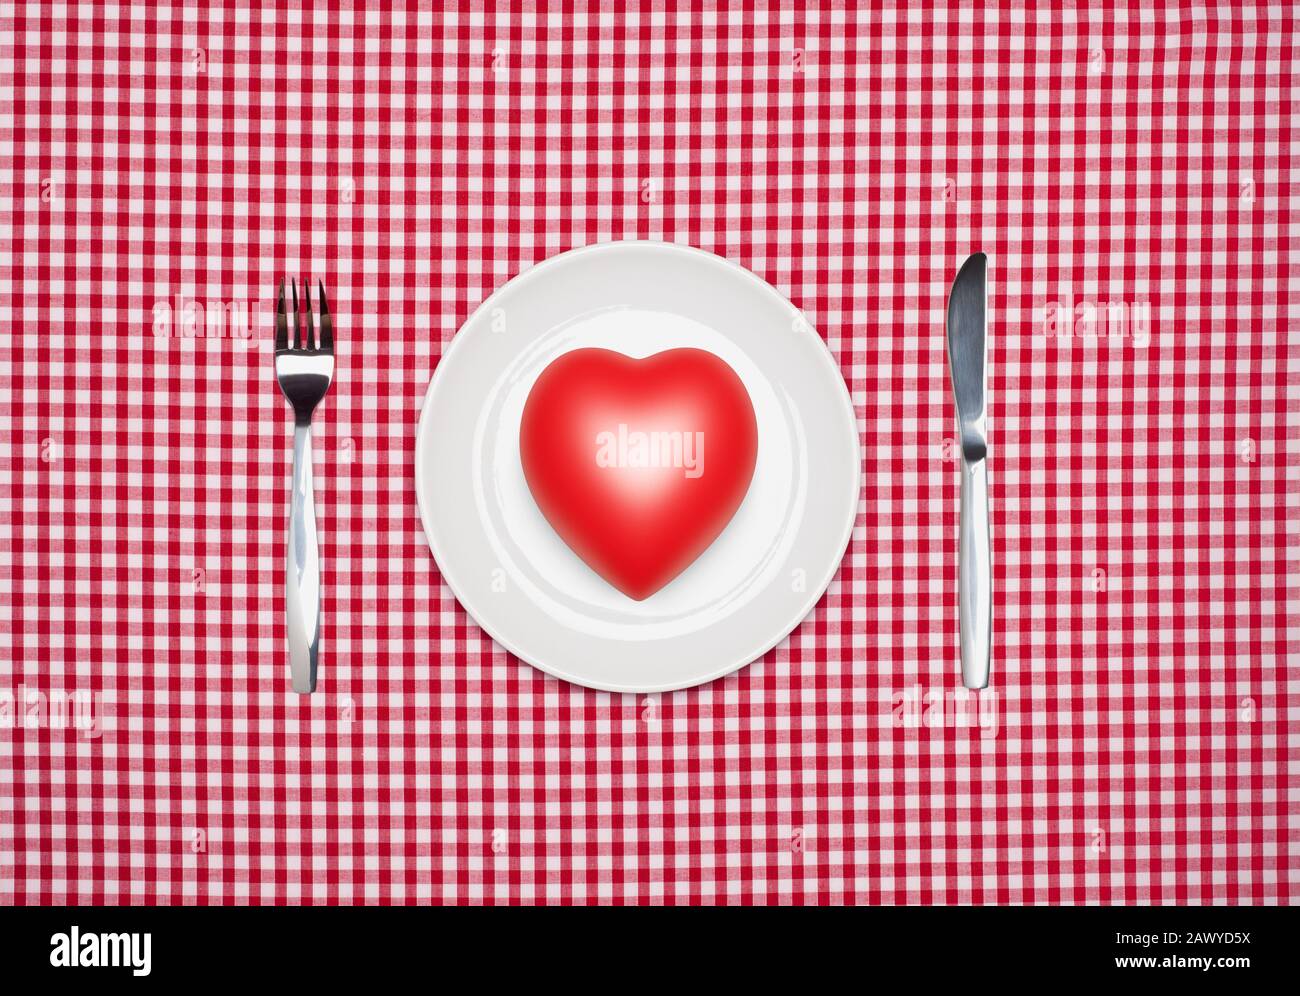 Concetto di alimentazione sana, un cuore rosso su una piastra rotonda bianca con coltello e forchetta dall'alto su una tovaglia rossa di gingham Foto Stock